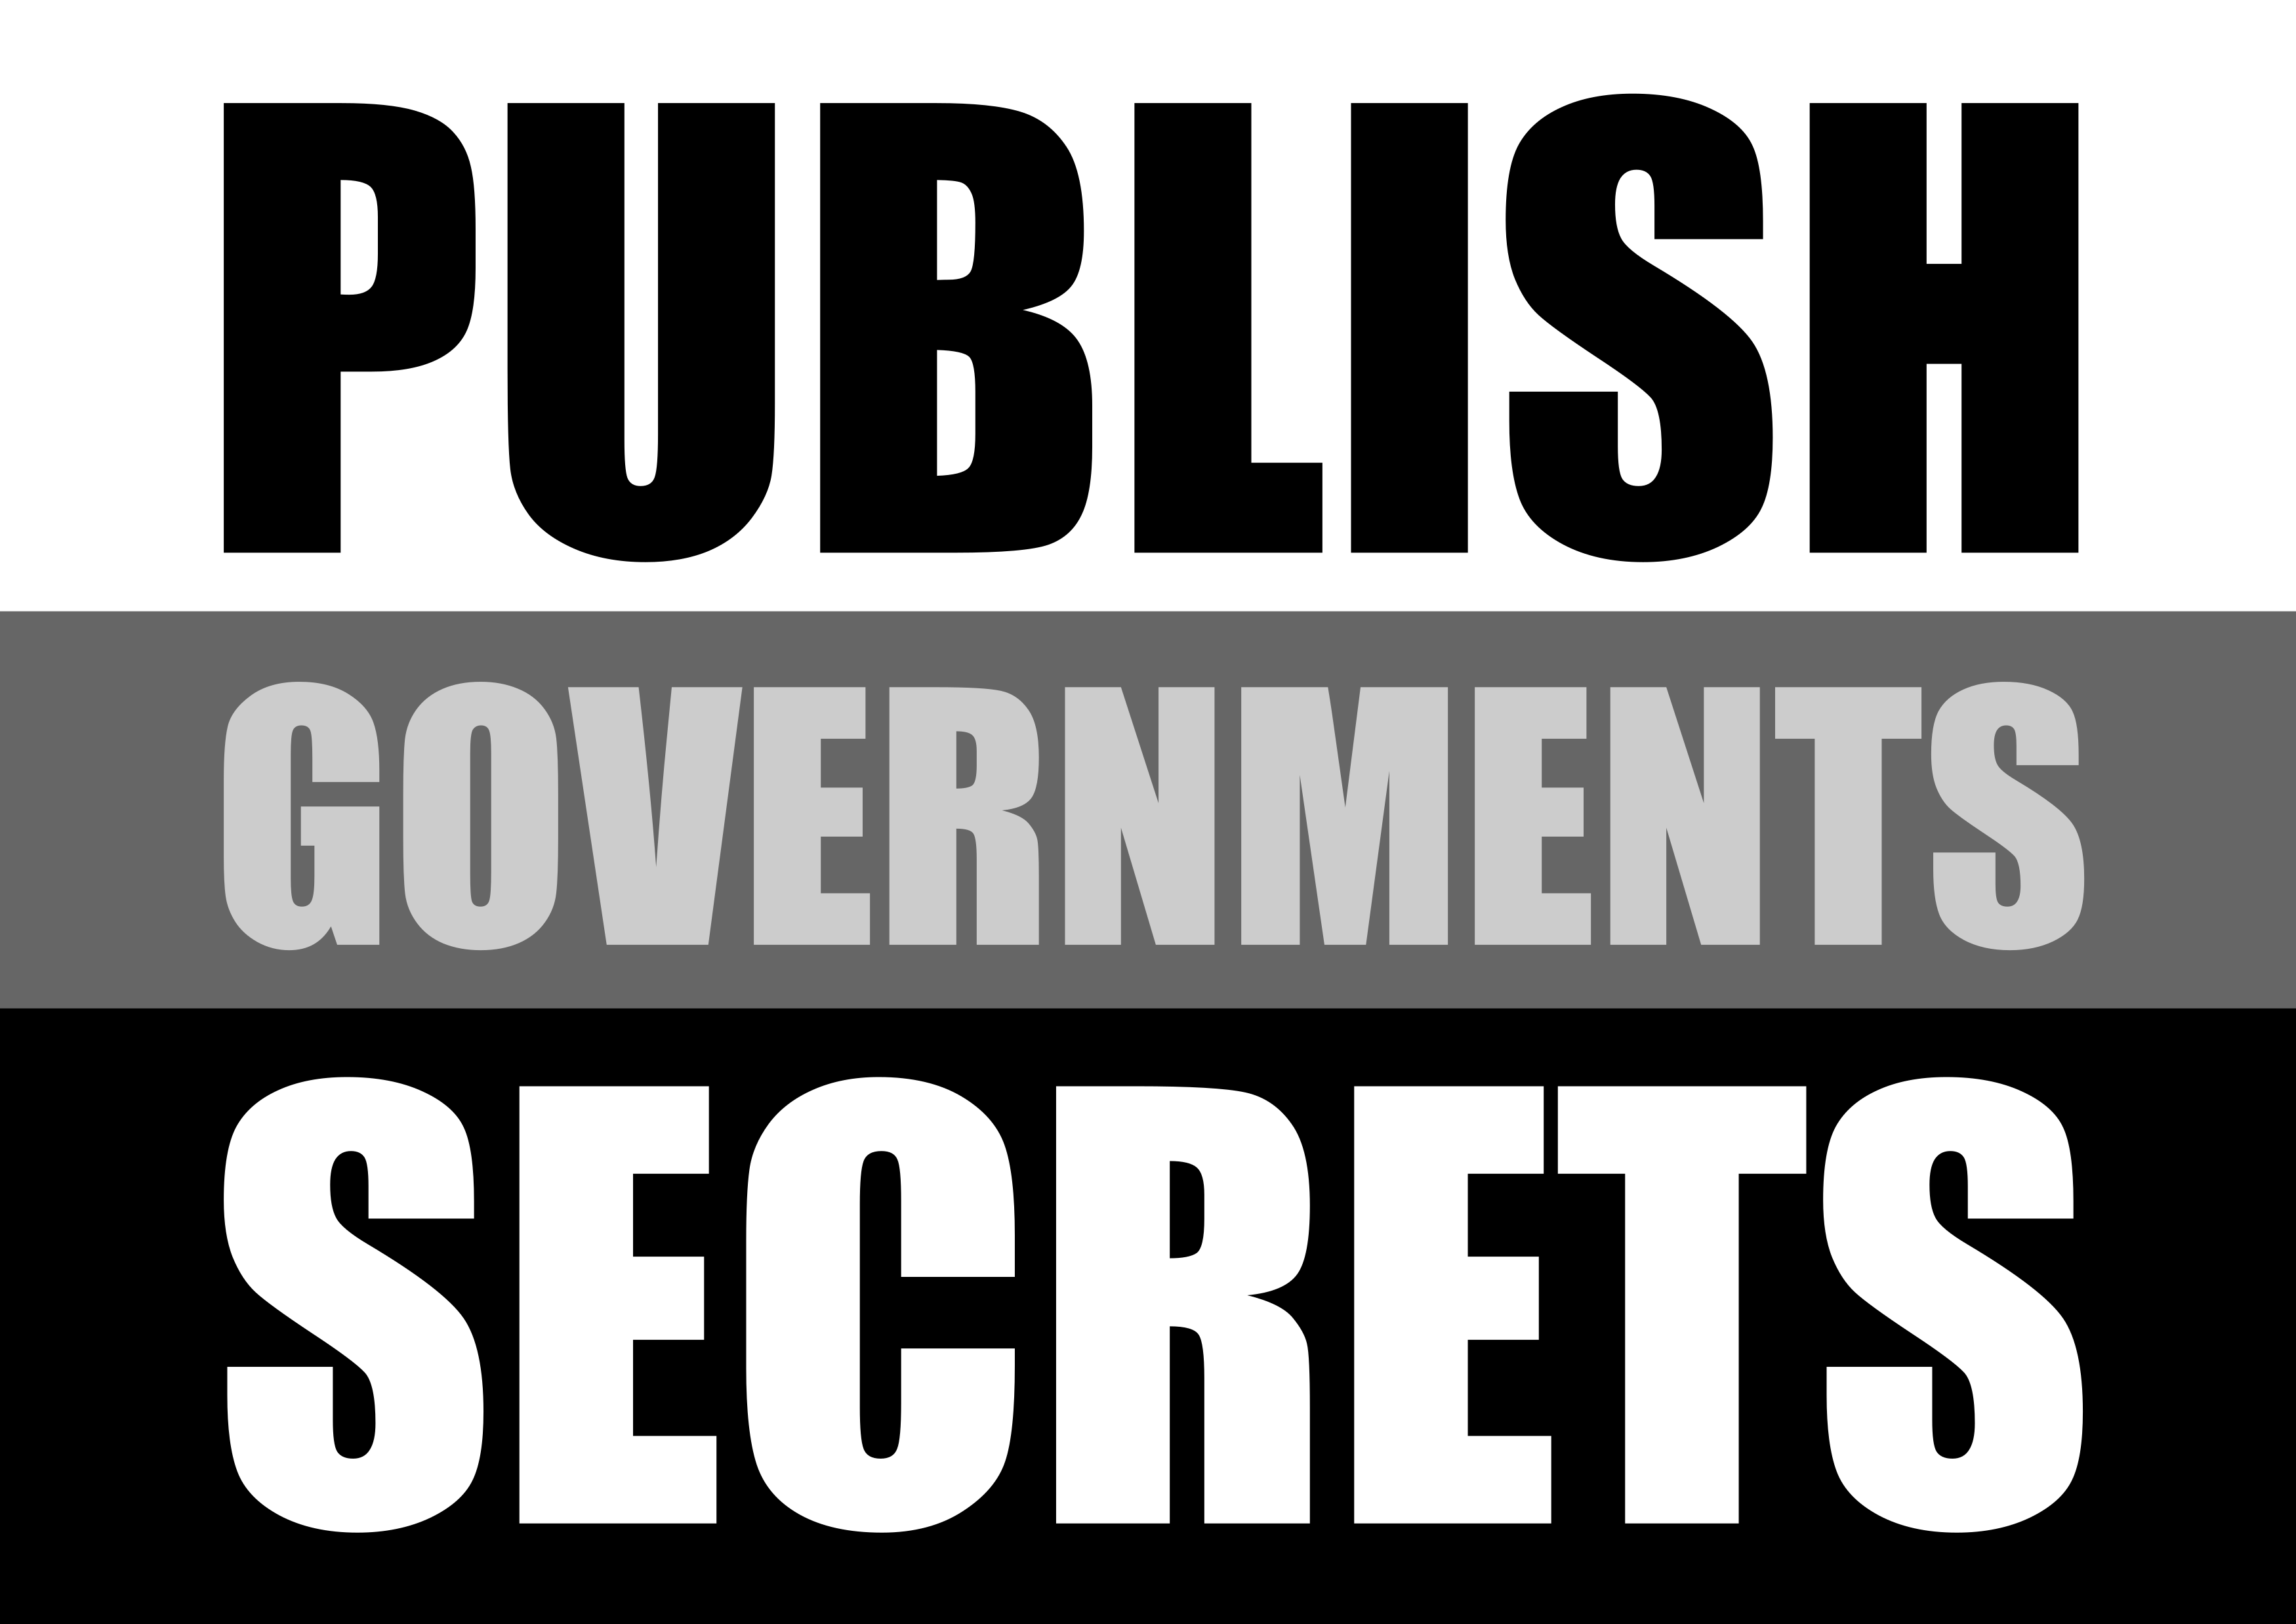 publish_governments_secrets.png